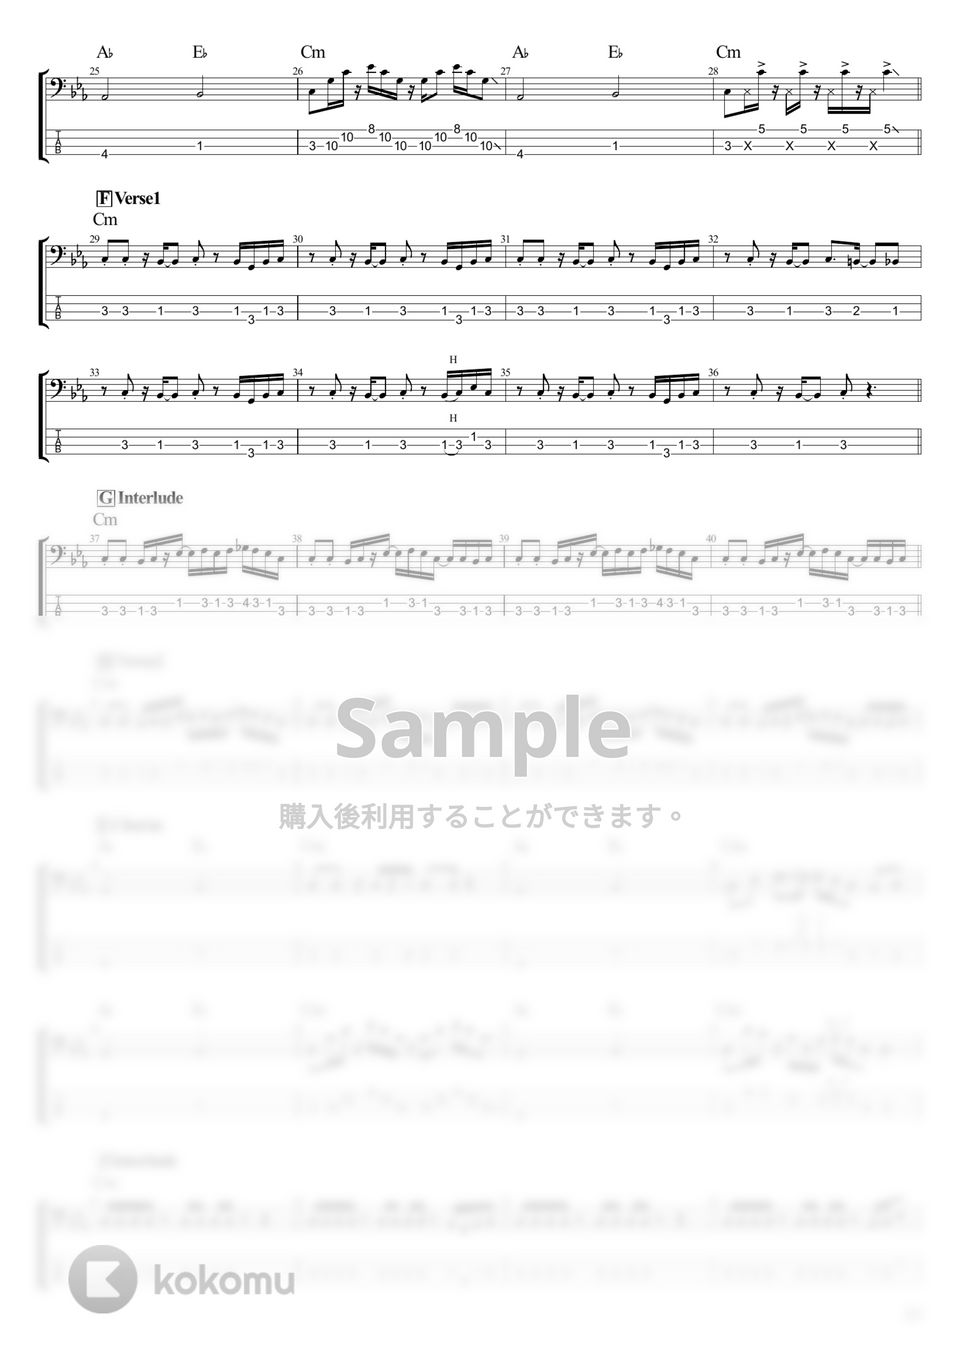 Kroi - Suck a Lemmon (ベース Tab譜 4弦) by T's bass score